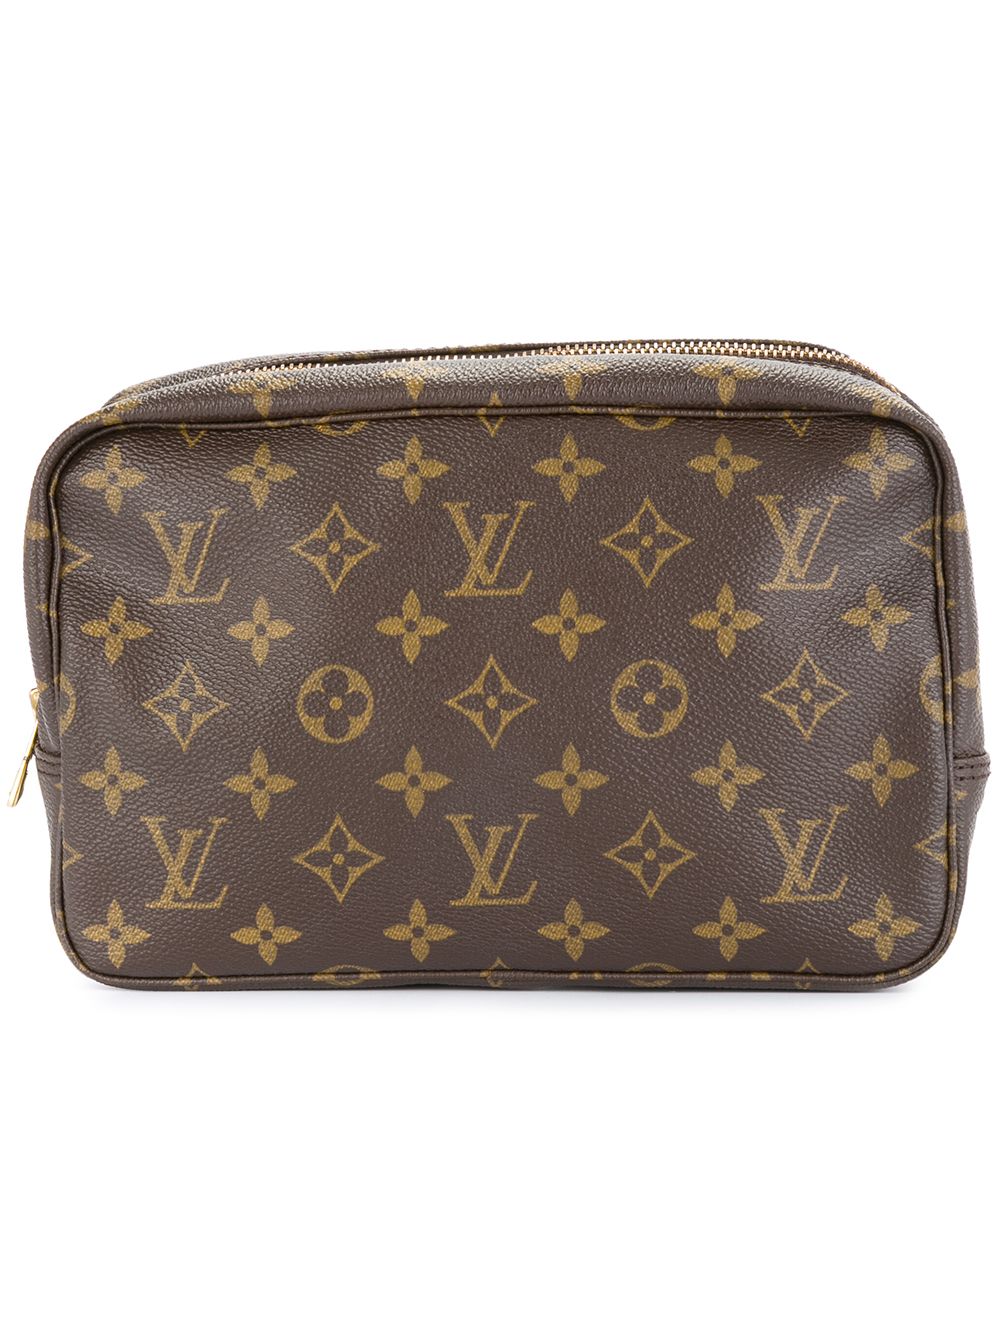 Louis Vuitton Trousse de Toilette Clutch Bag